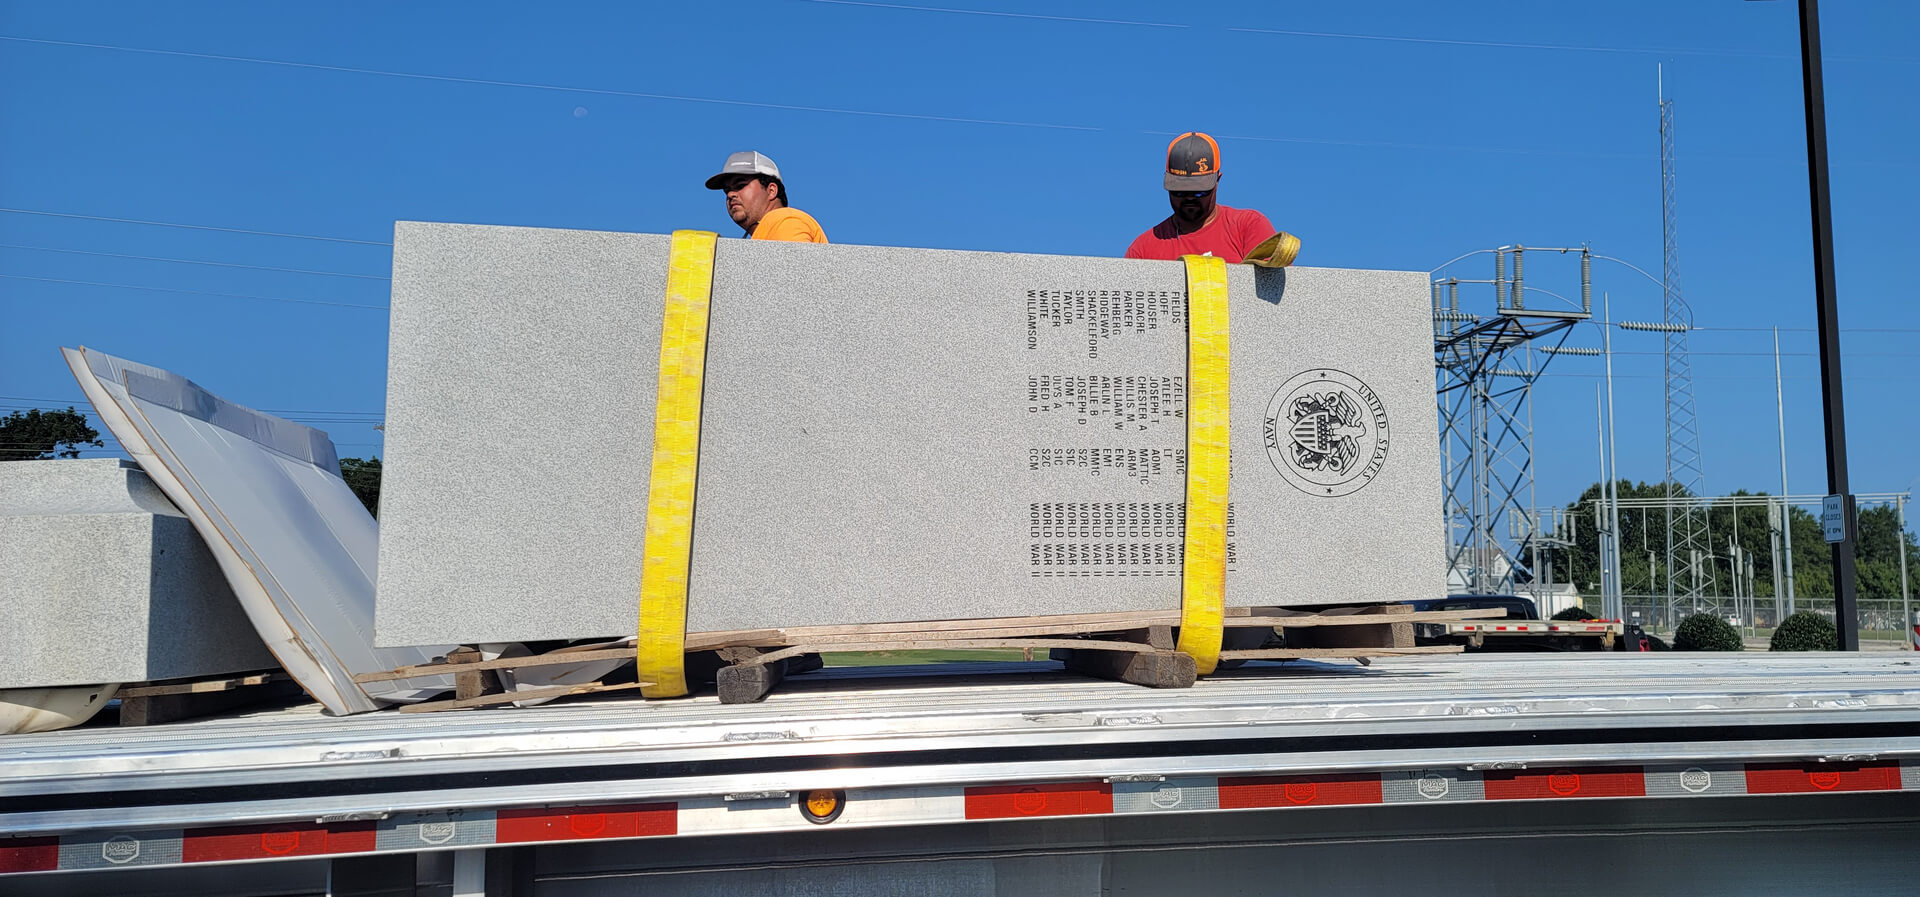 A Crane Lifting a Memorial Plaque From a Truck